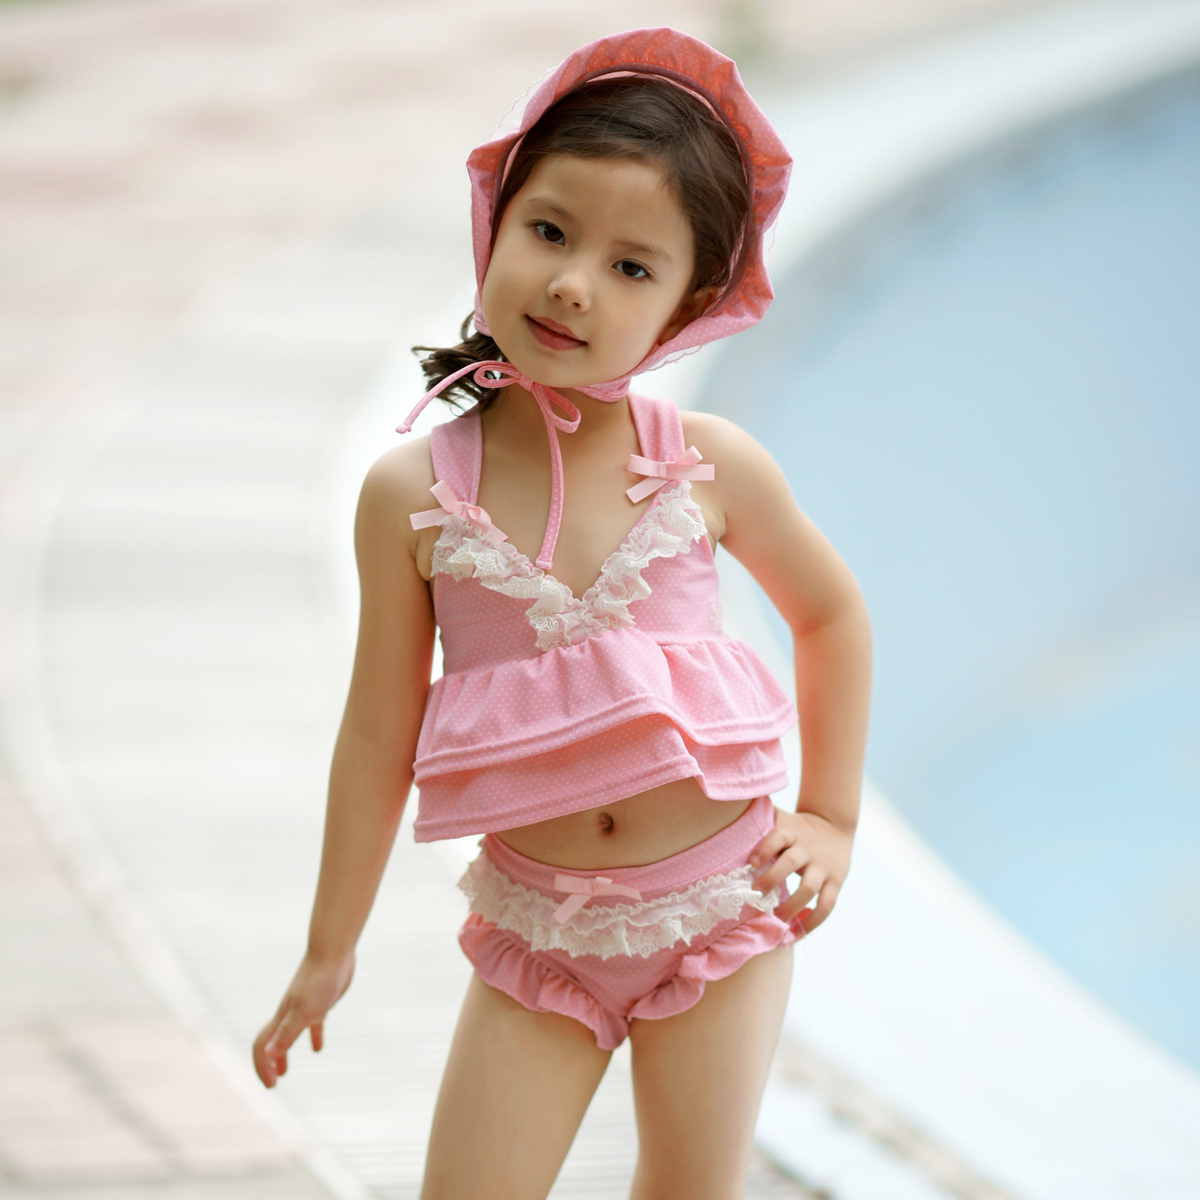 淘品牌珍妮贝尔女童泳装 粉红色蕾丝花边泳衣 2011新款